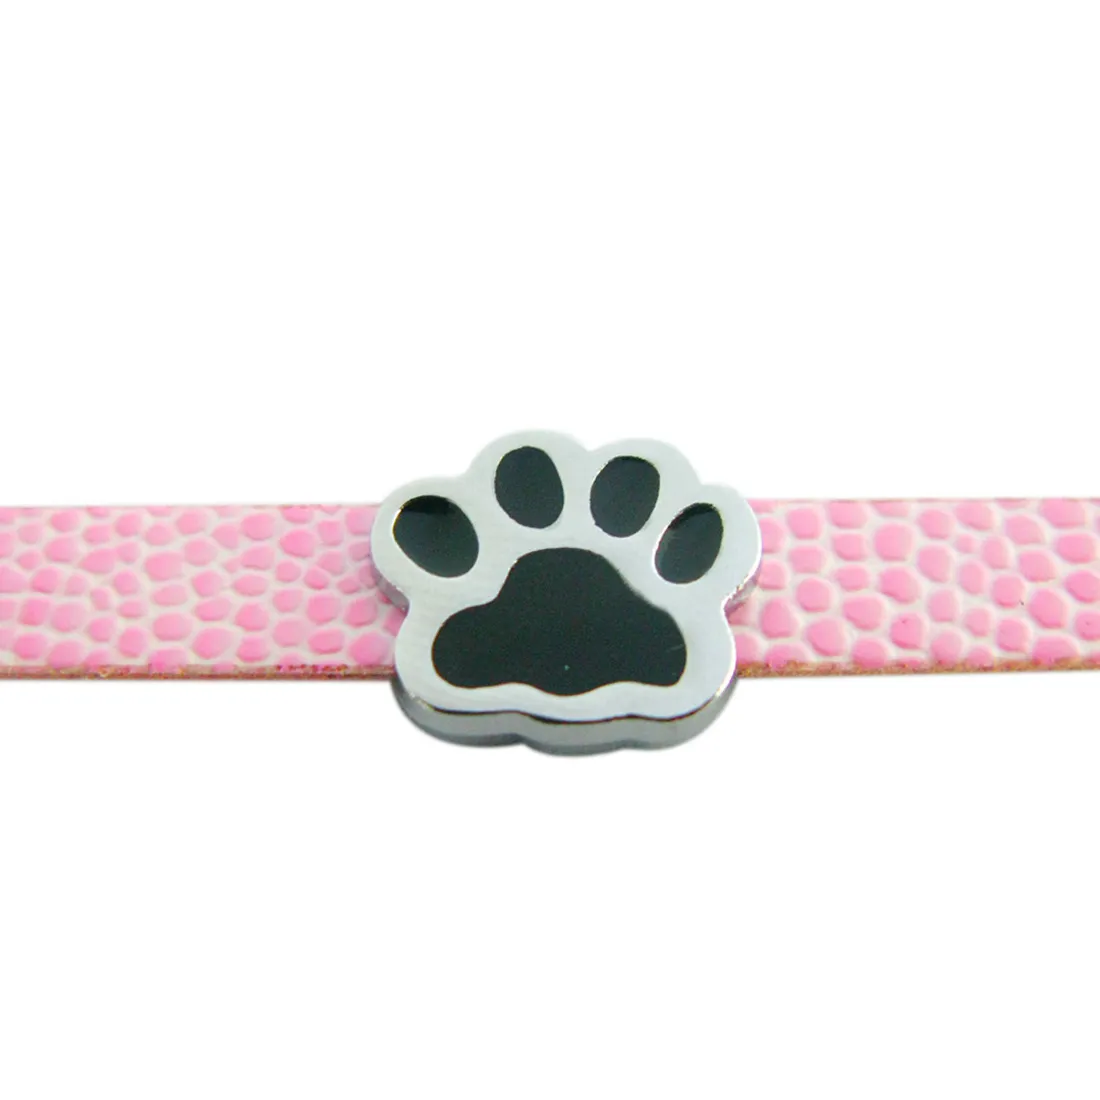 Venta al por mayor 50pcs / lot 8mm encantos de diapositivas de pata negra aptos para accesorios de bricolaje 8mm pulsera de pulsera de collar para mascotas